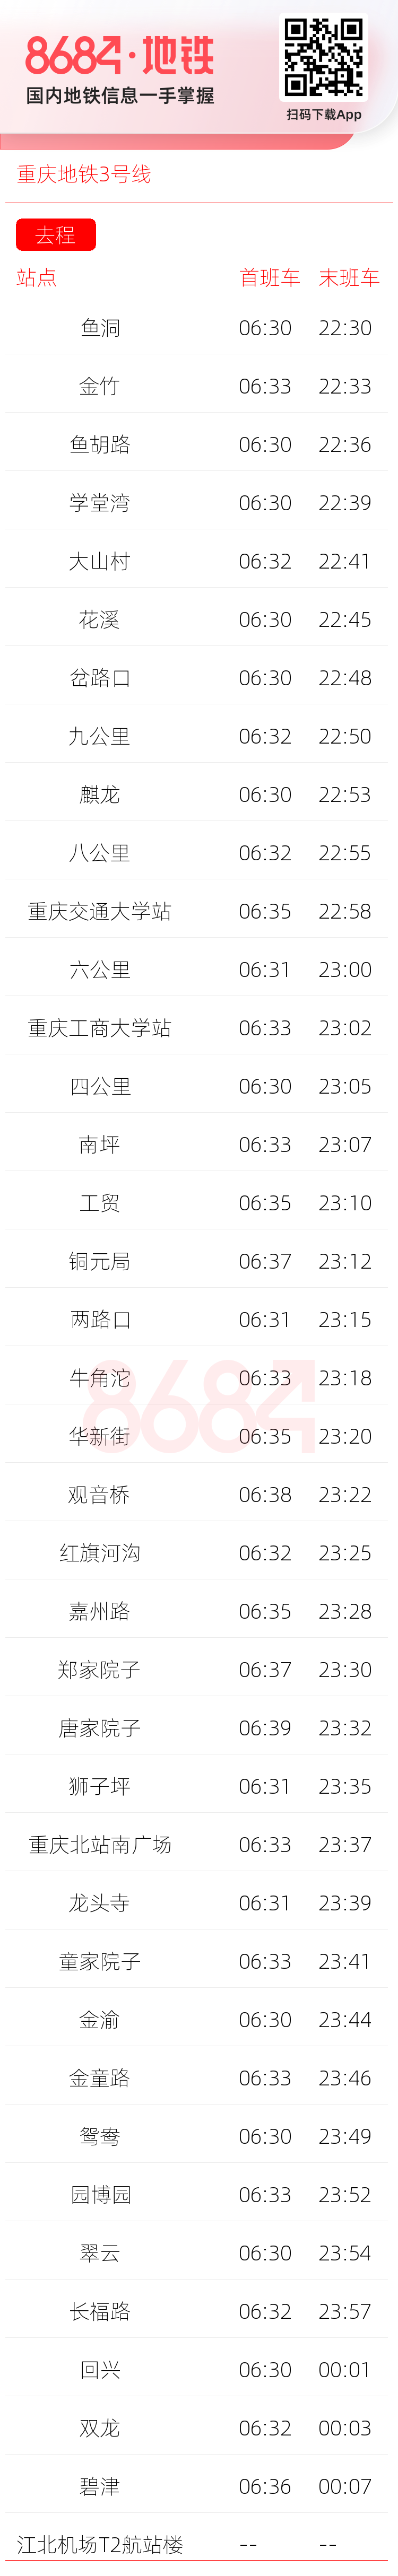 重庆地铁3号线运营时间表